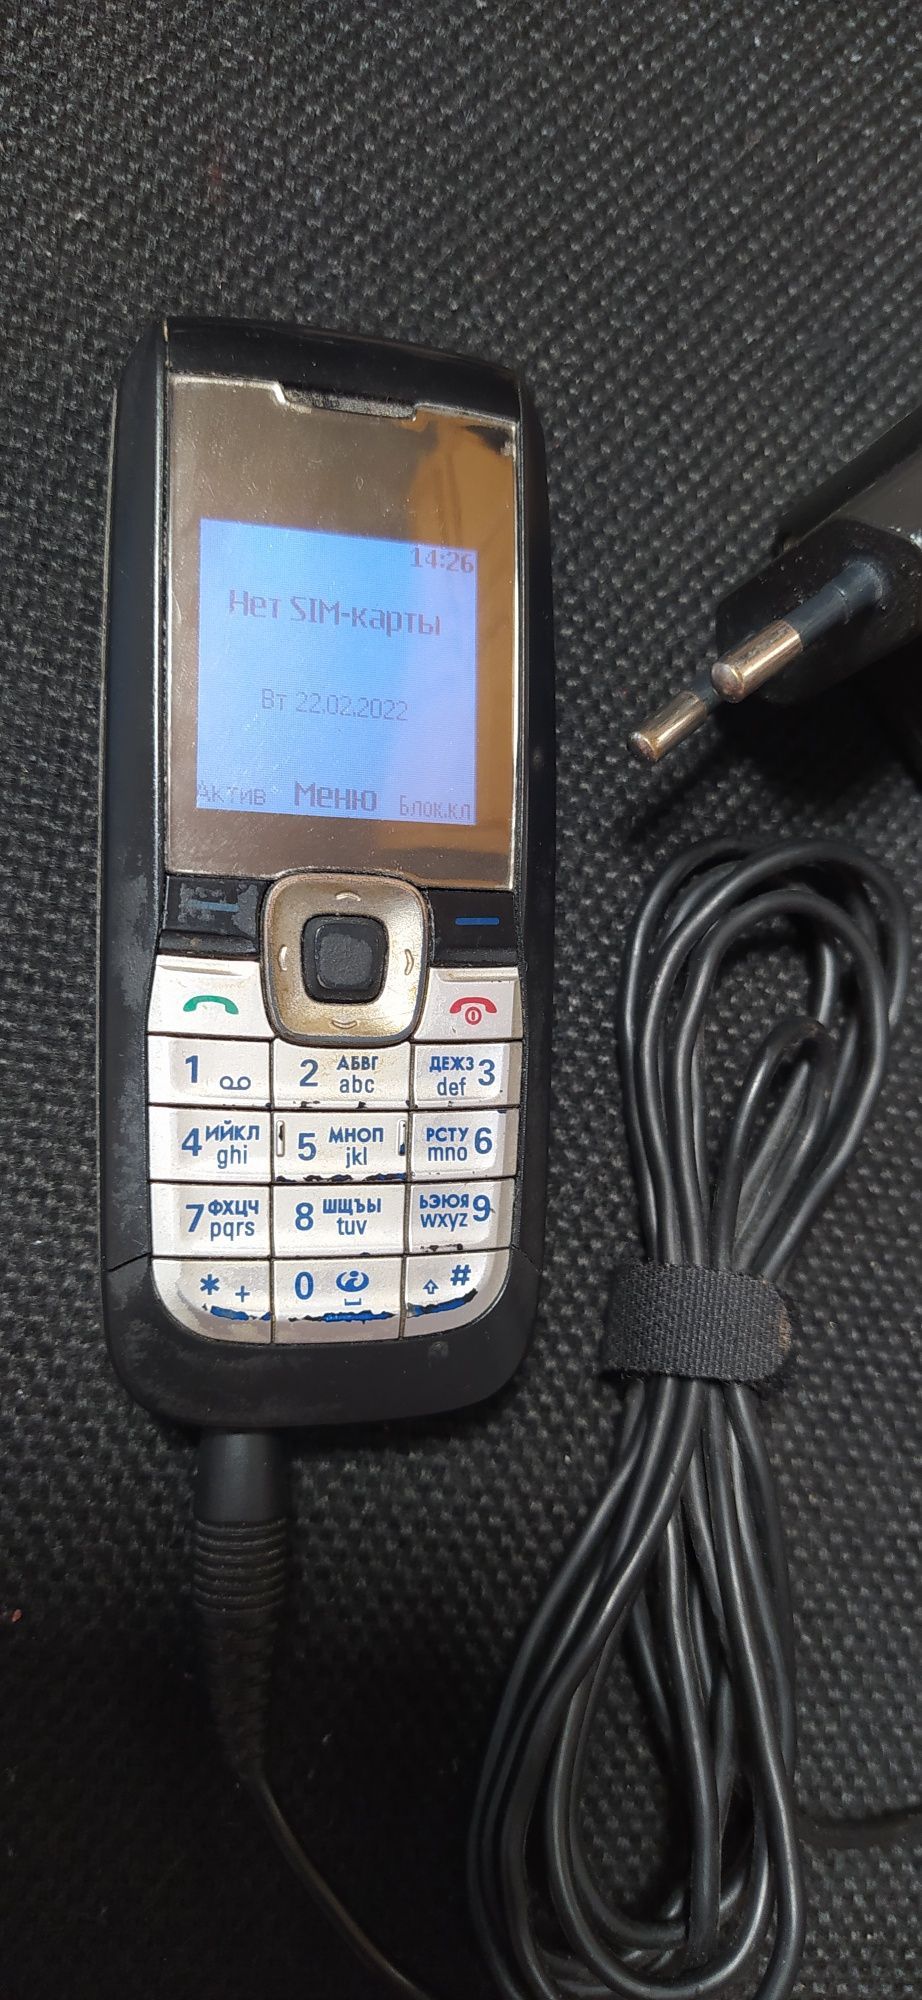 Nokia 2610 мобильный телефон.